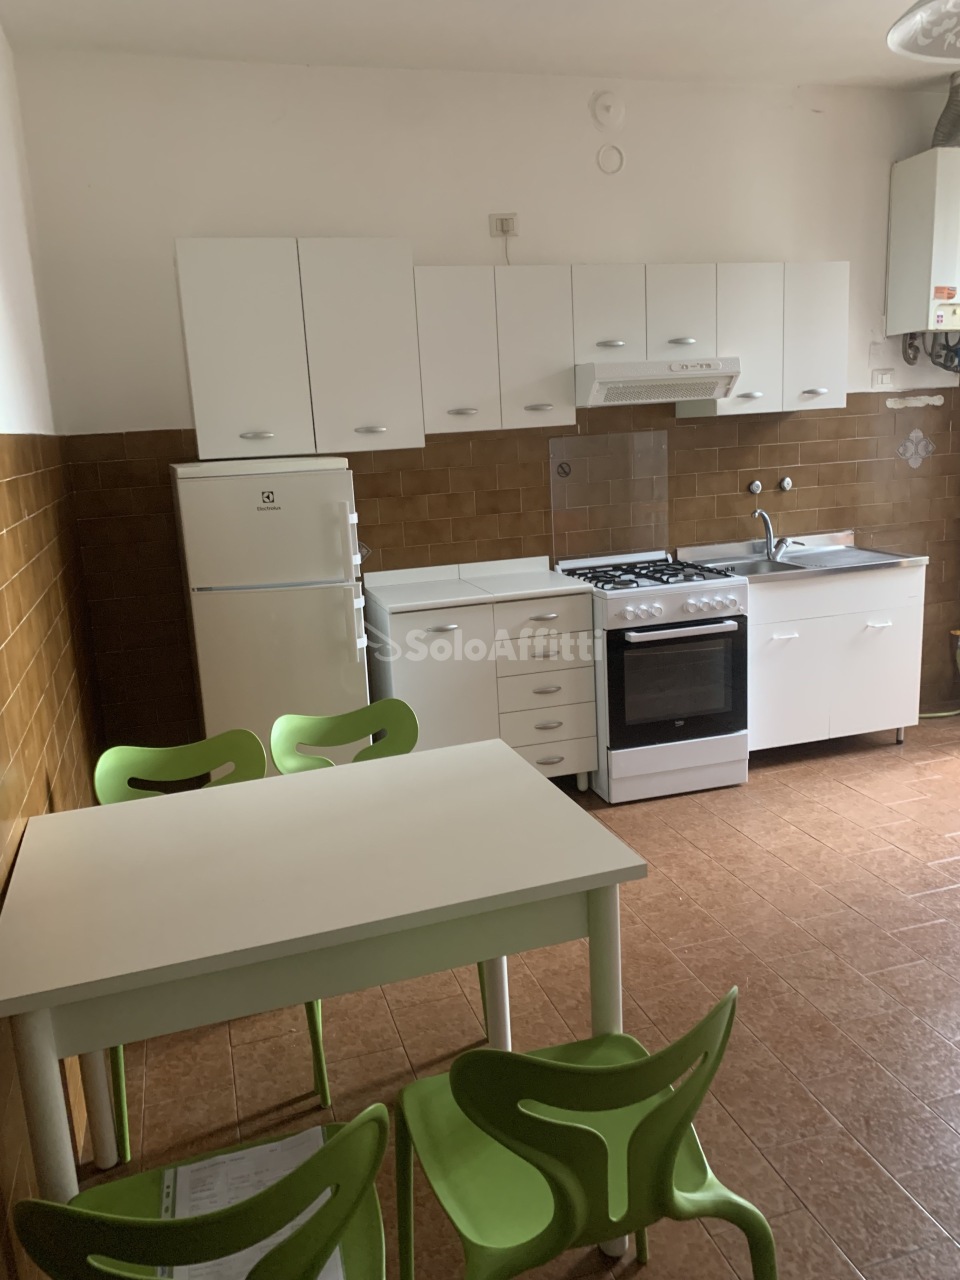 Appartamento in affitto a Novara, 3 locali, prezzo € 650 | CambioCasa.it